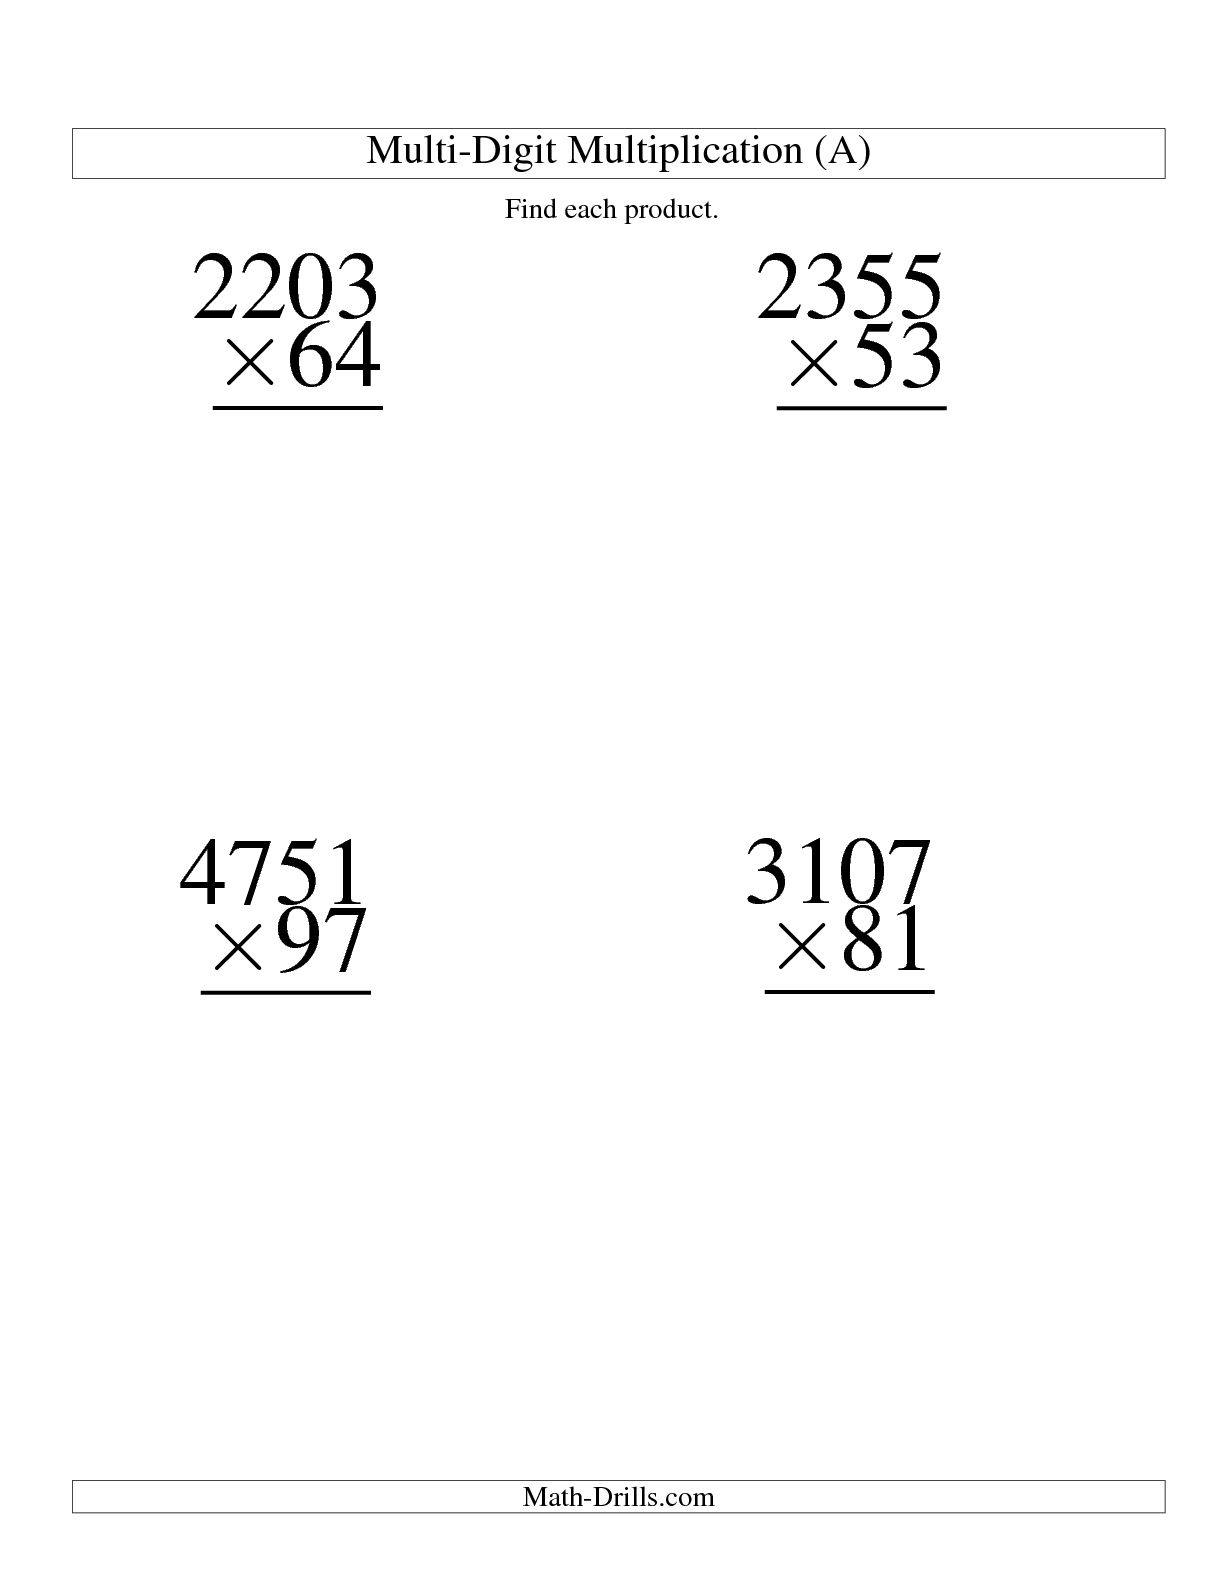 13-best-images-of-4-digit-multiplication-worksheets-3-digit-multiplication-worksheets-grade-5